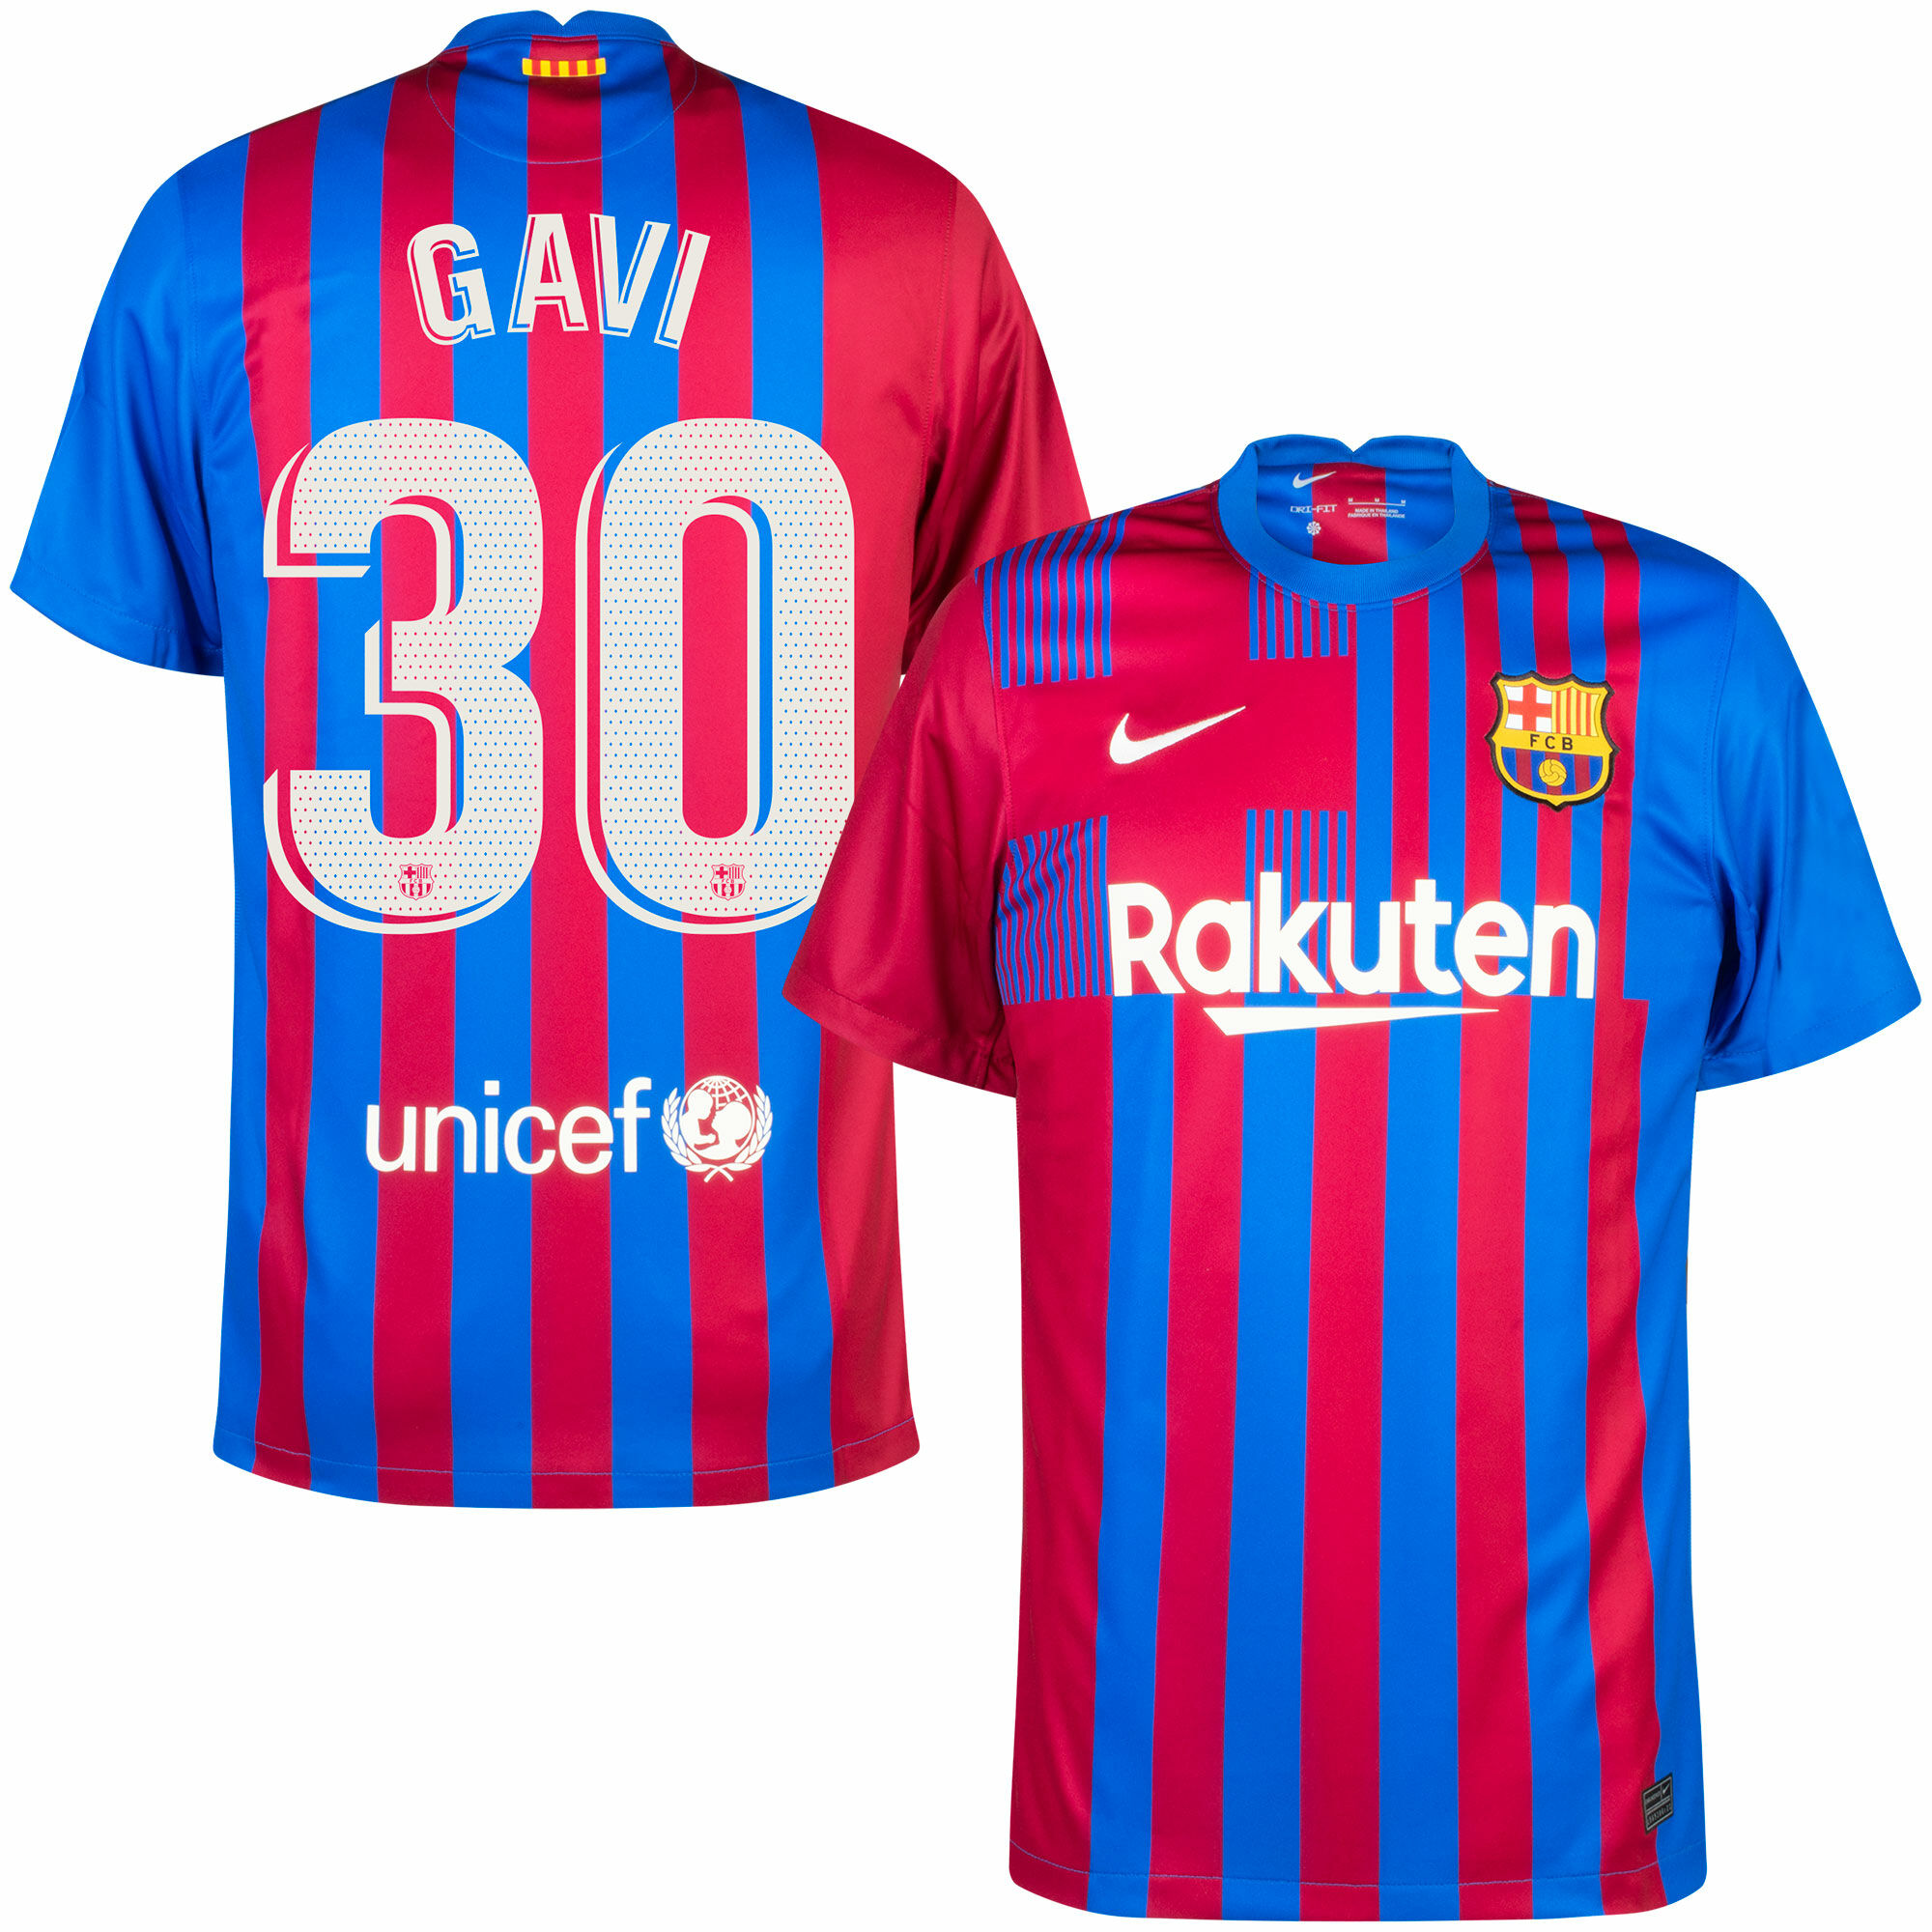 Barcelona - Dres fotbalový - číslo 30, modročervený, oficiální potisk, sezóna 2021/22, Gavi, domácí